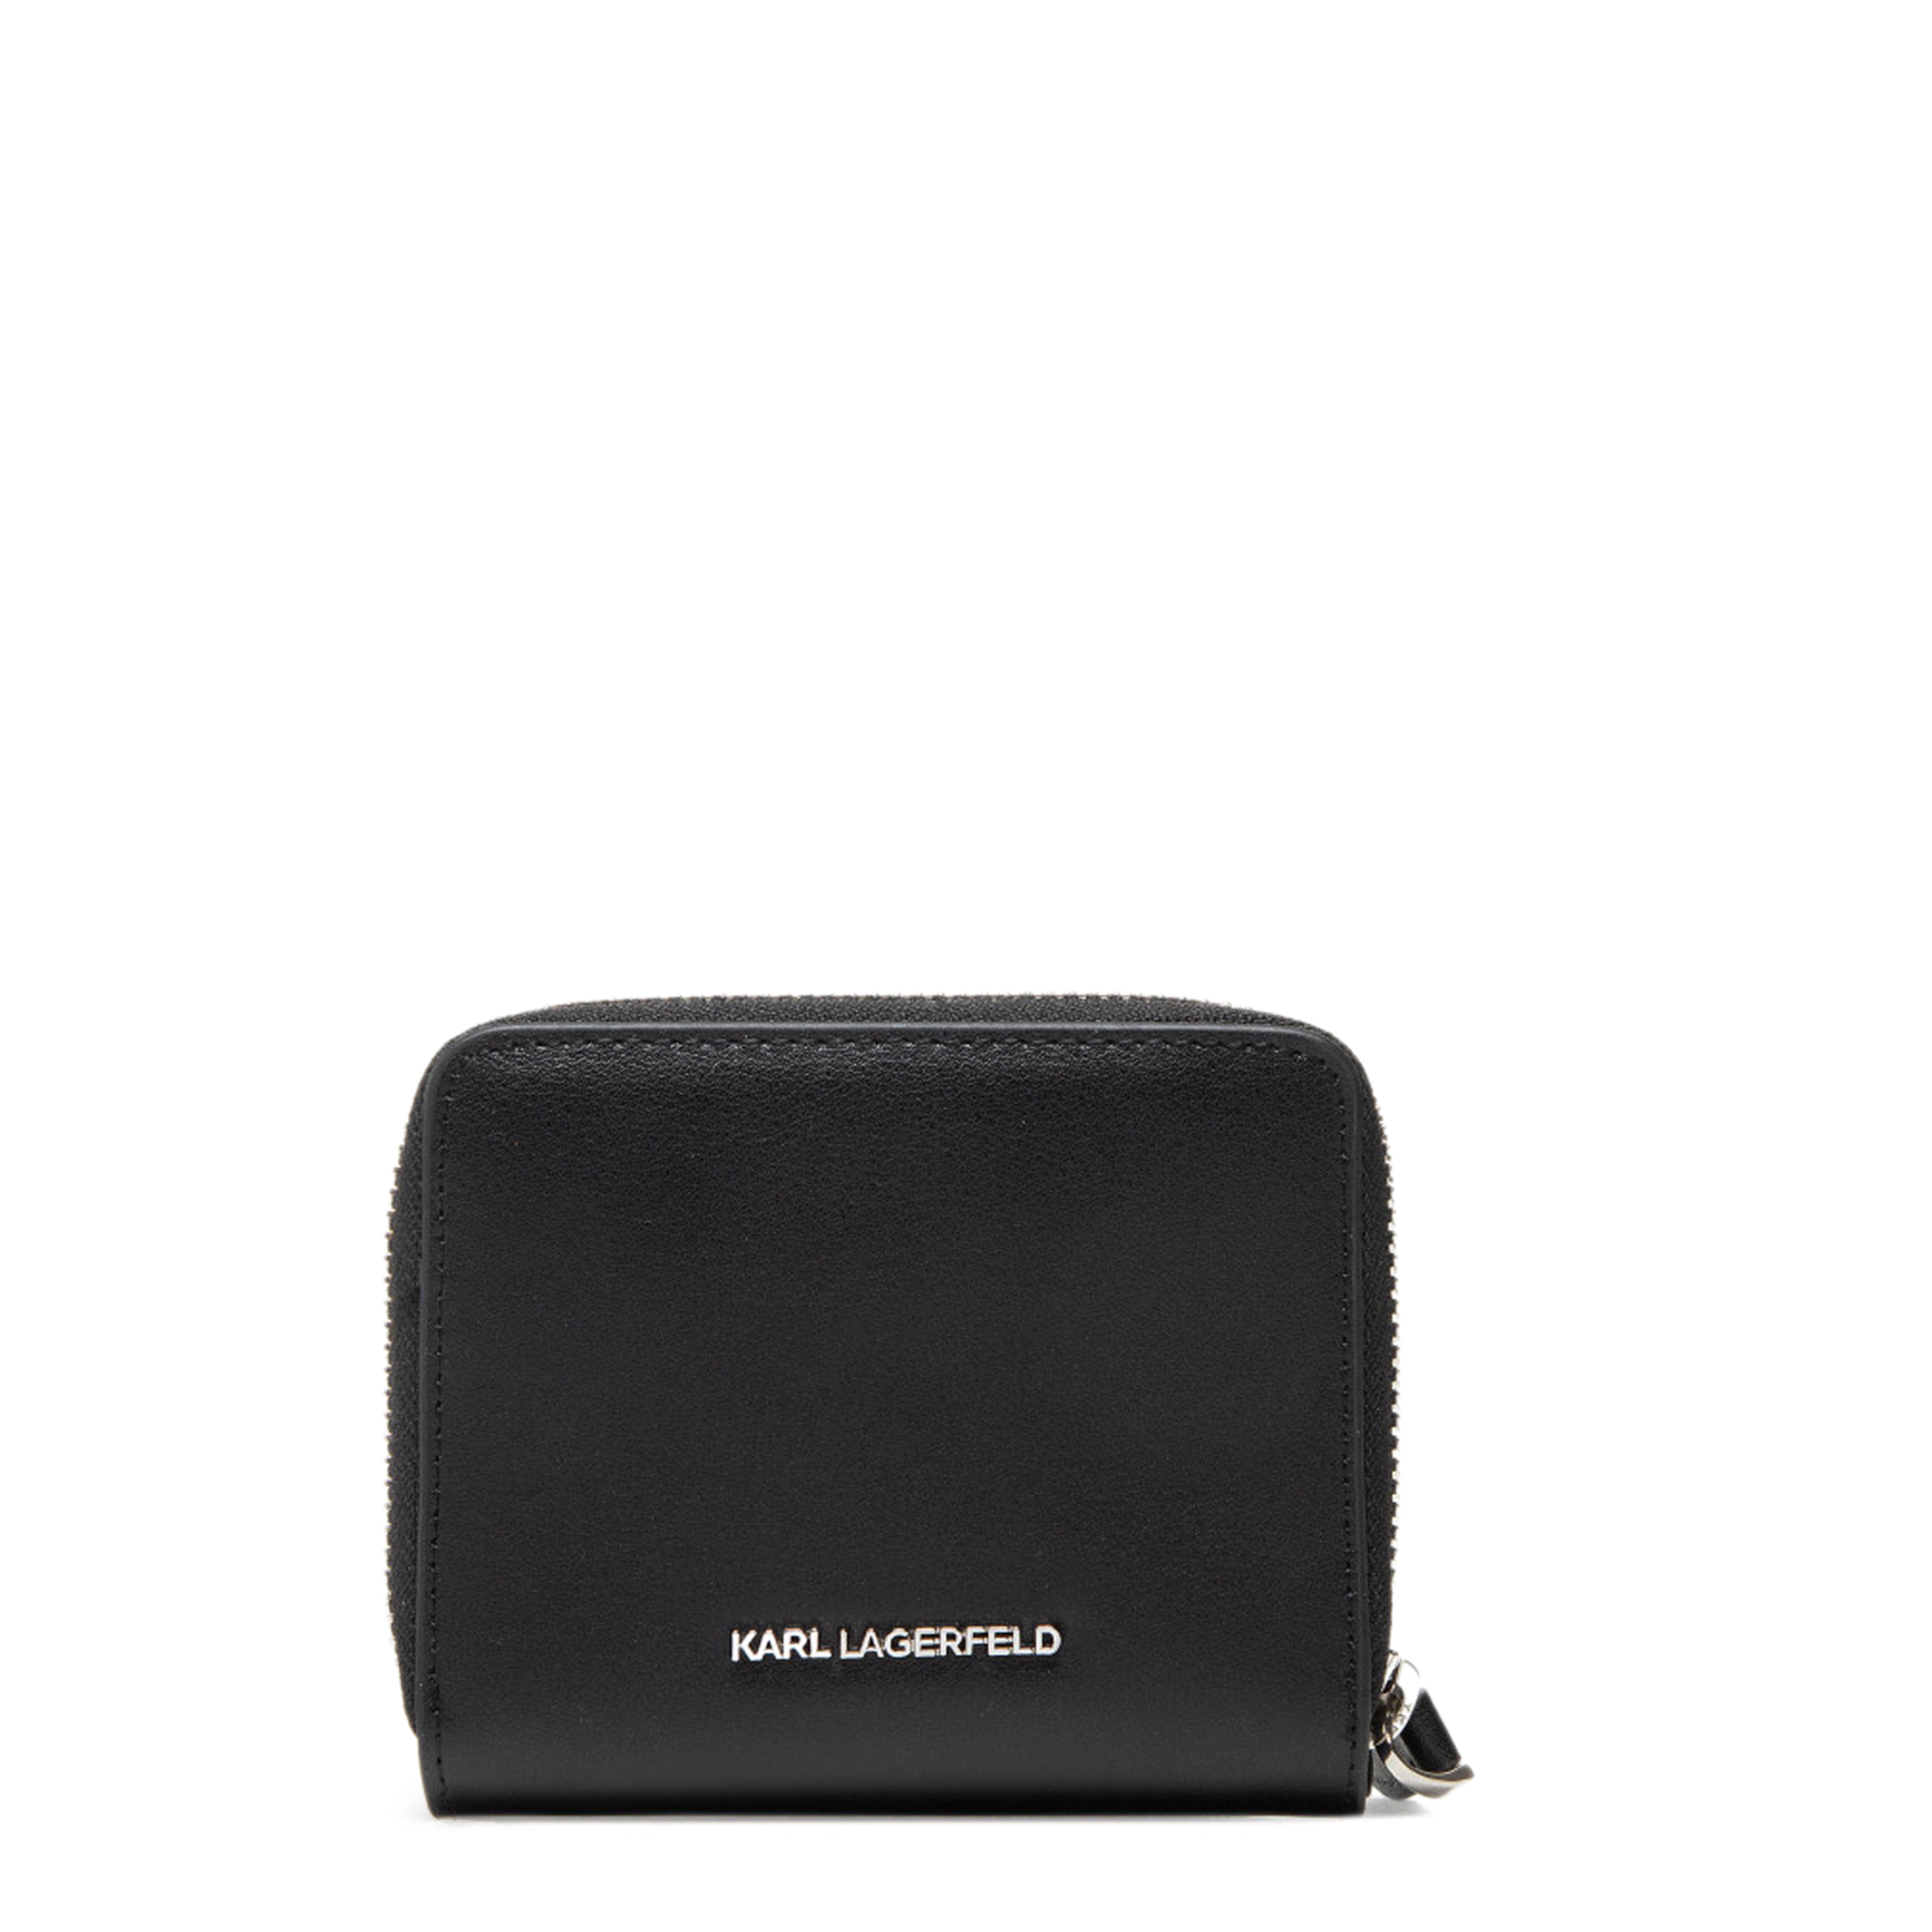 Karl Lagerfeld Black Wallets for Women - 220W3218